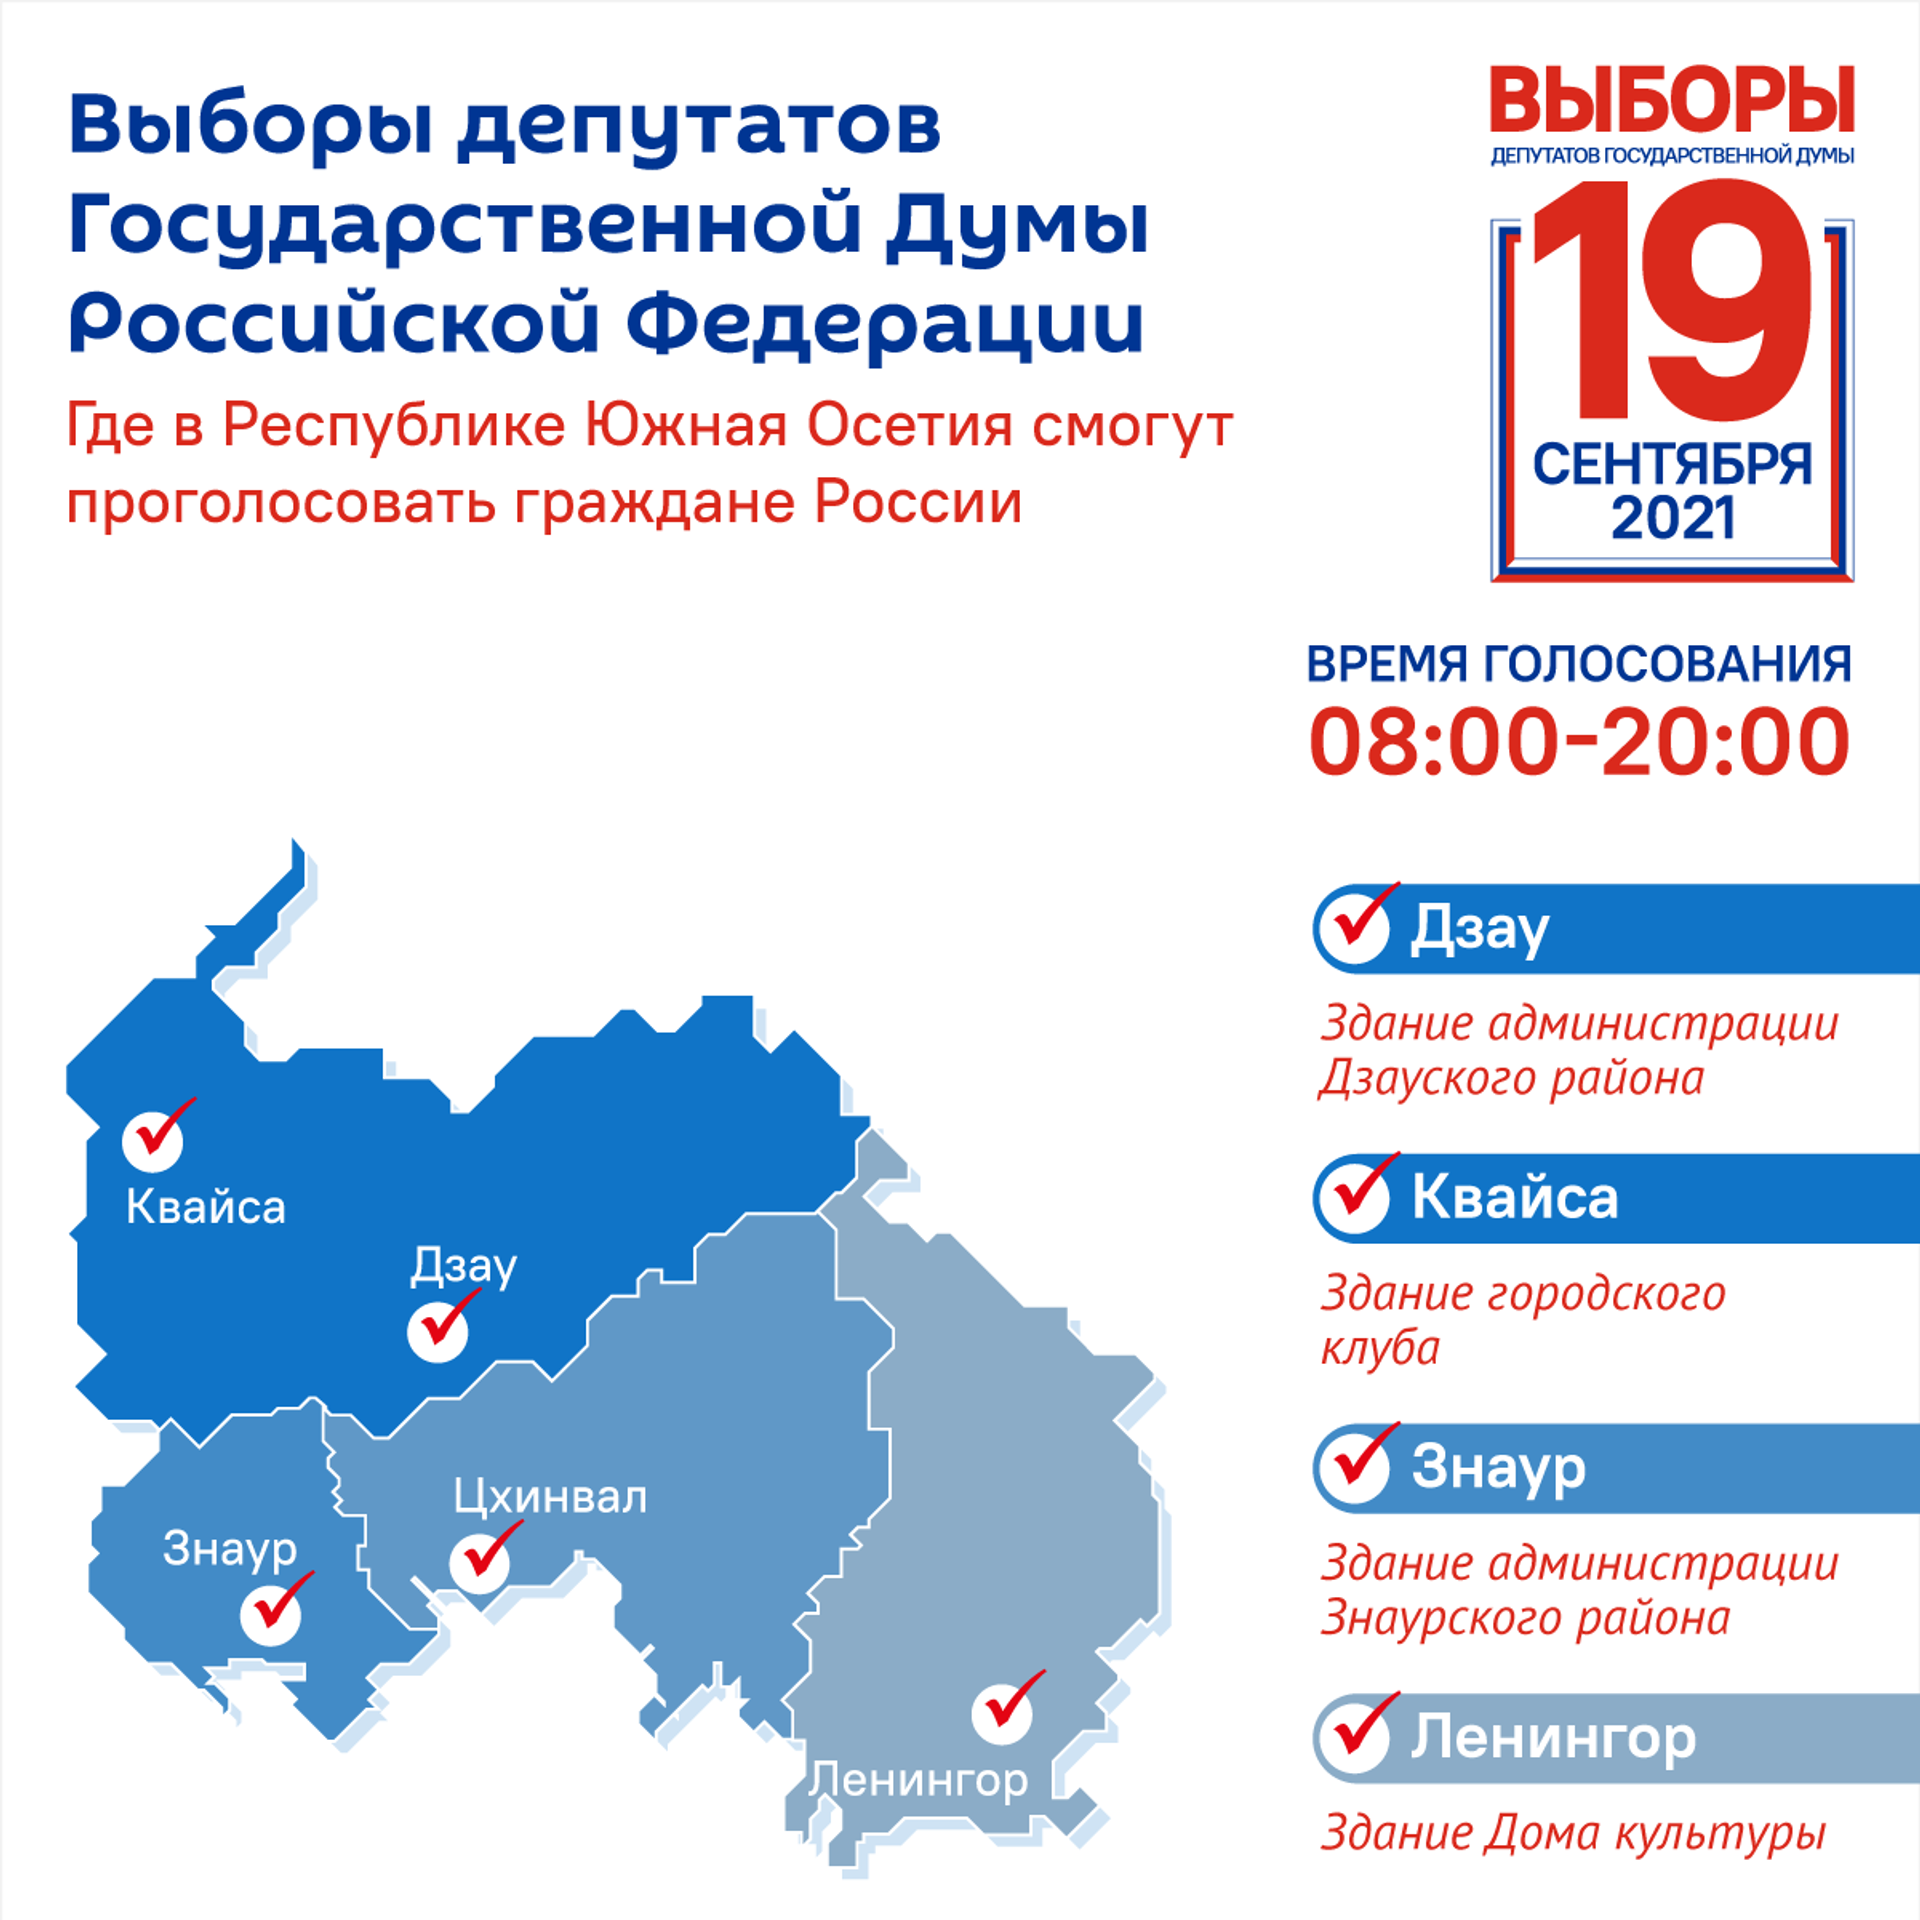 Где проголосовать в беларуси